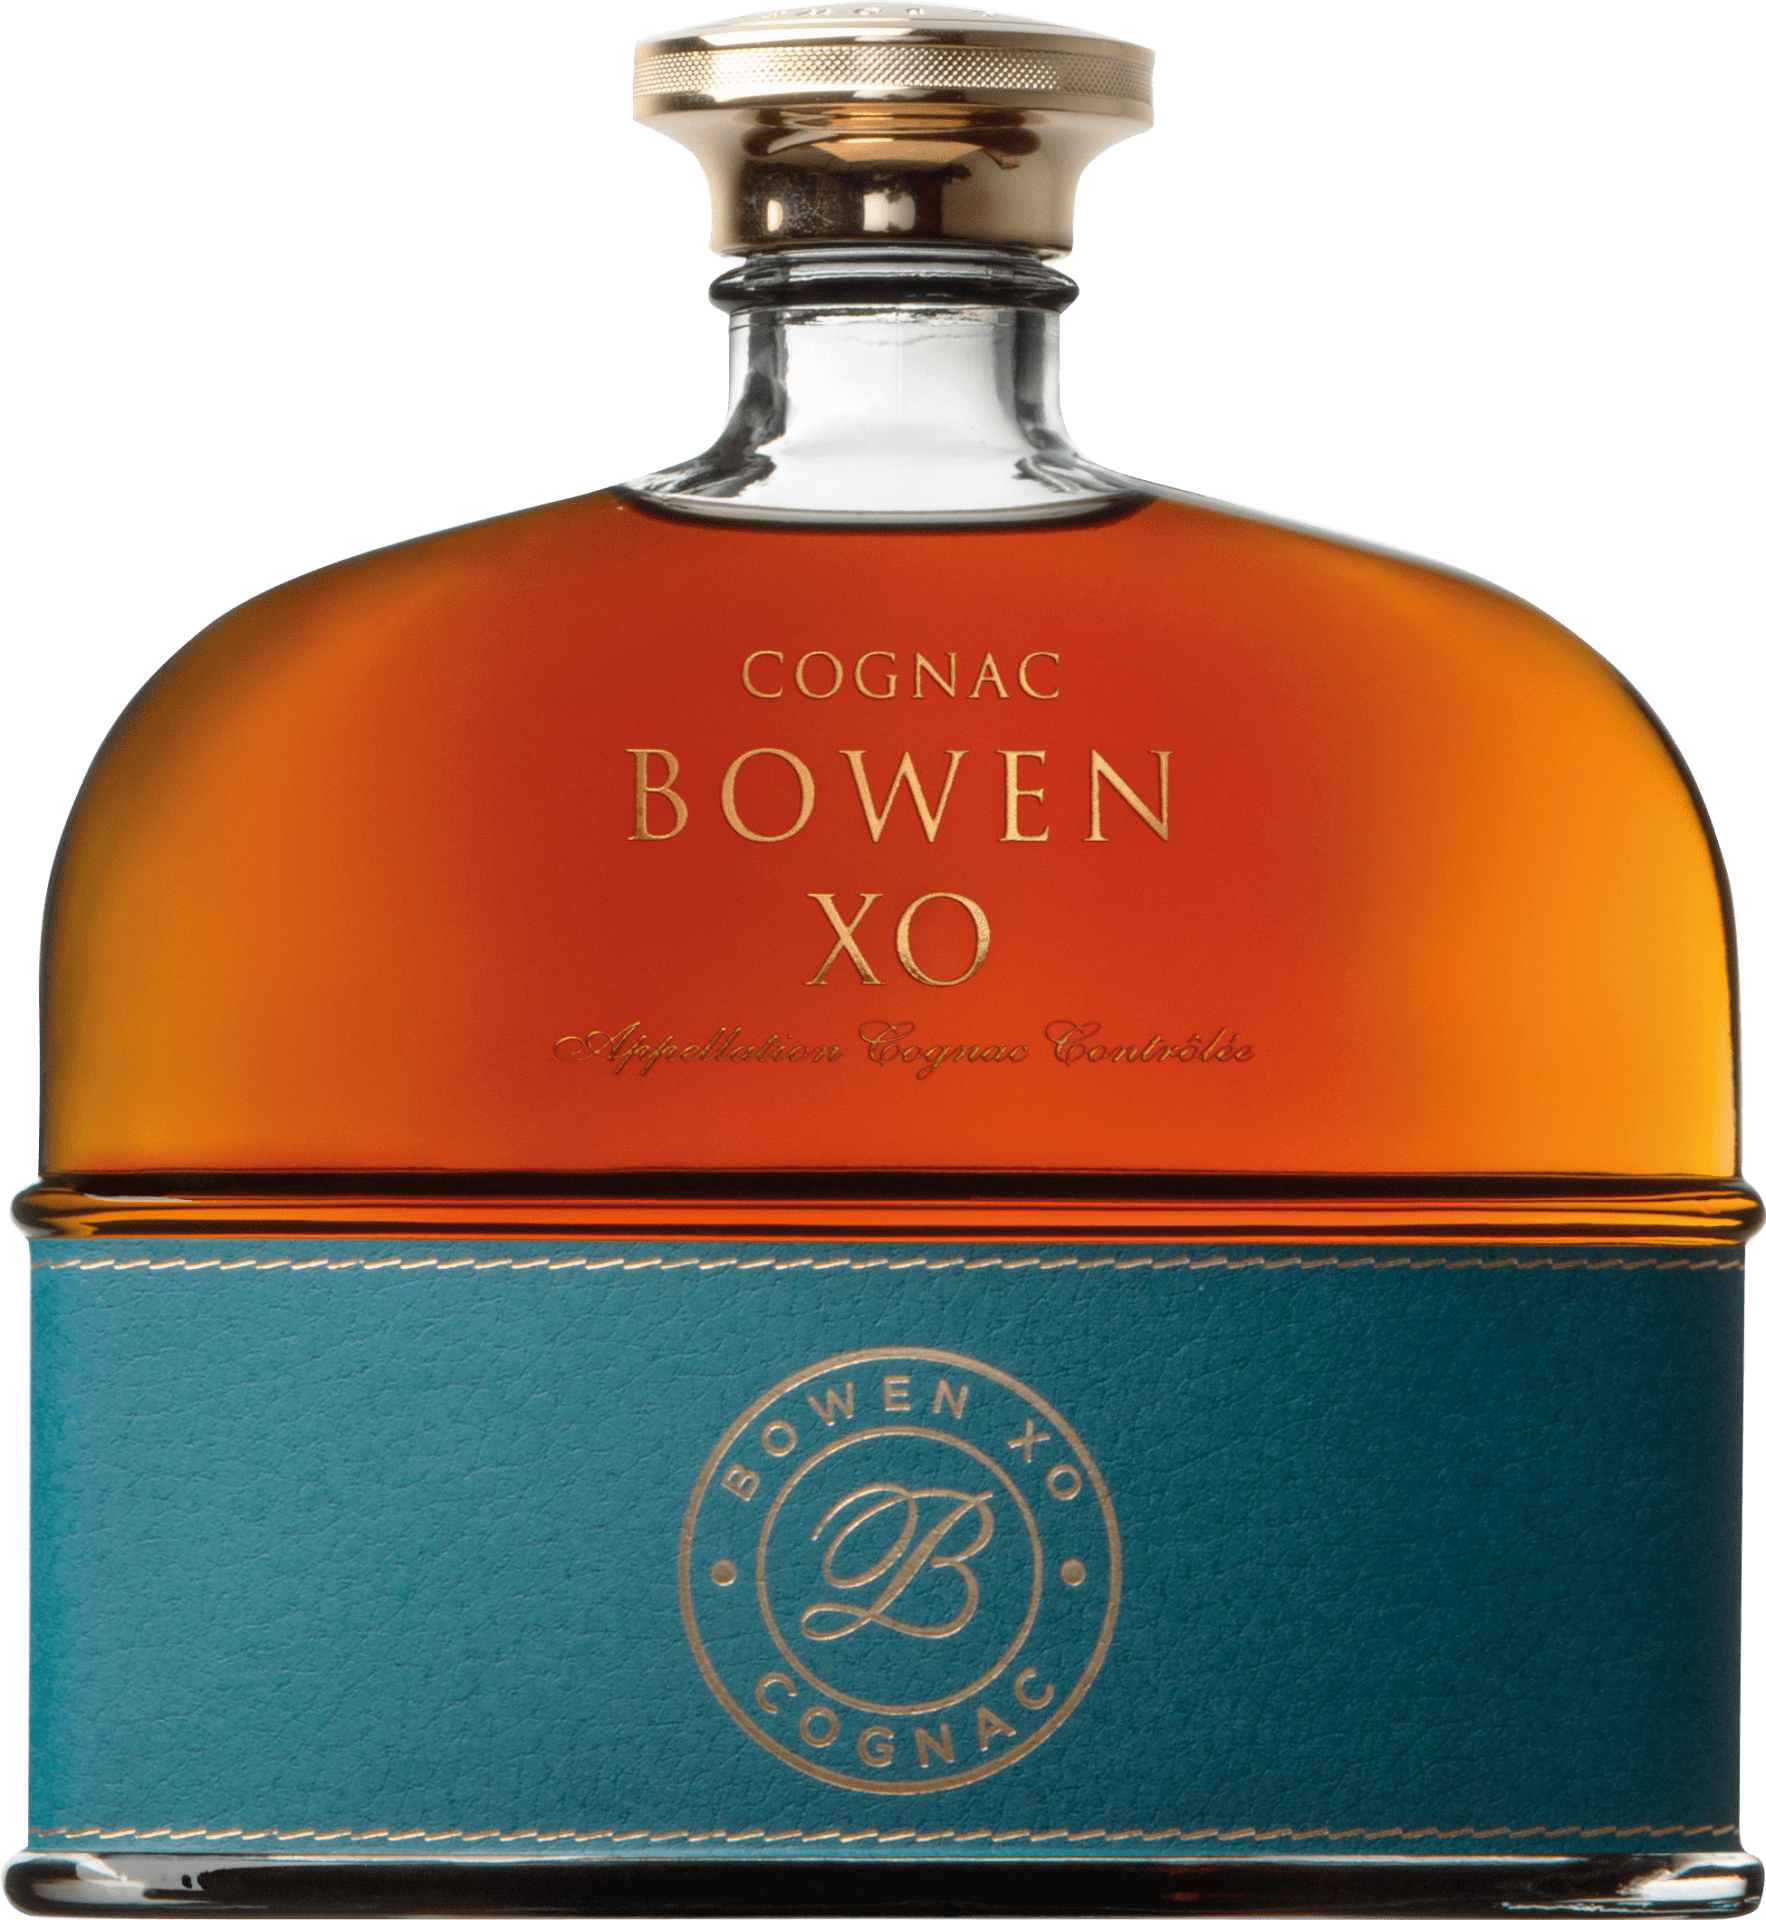 Cognac Bowen Cognac Bowen XO 18-20 Jahre in GP - 0.7 l